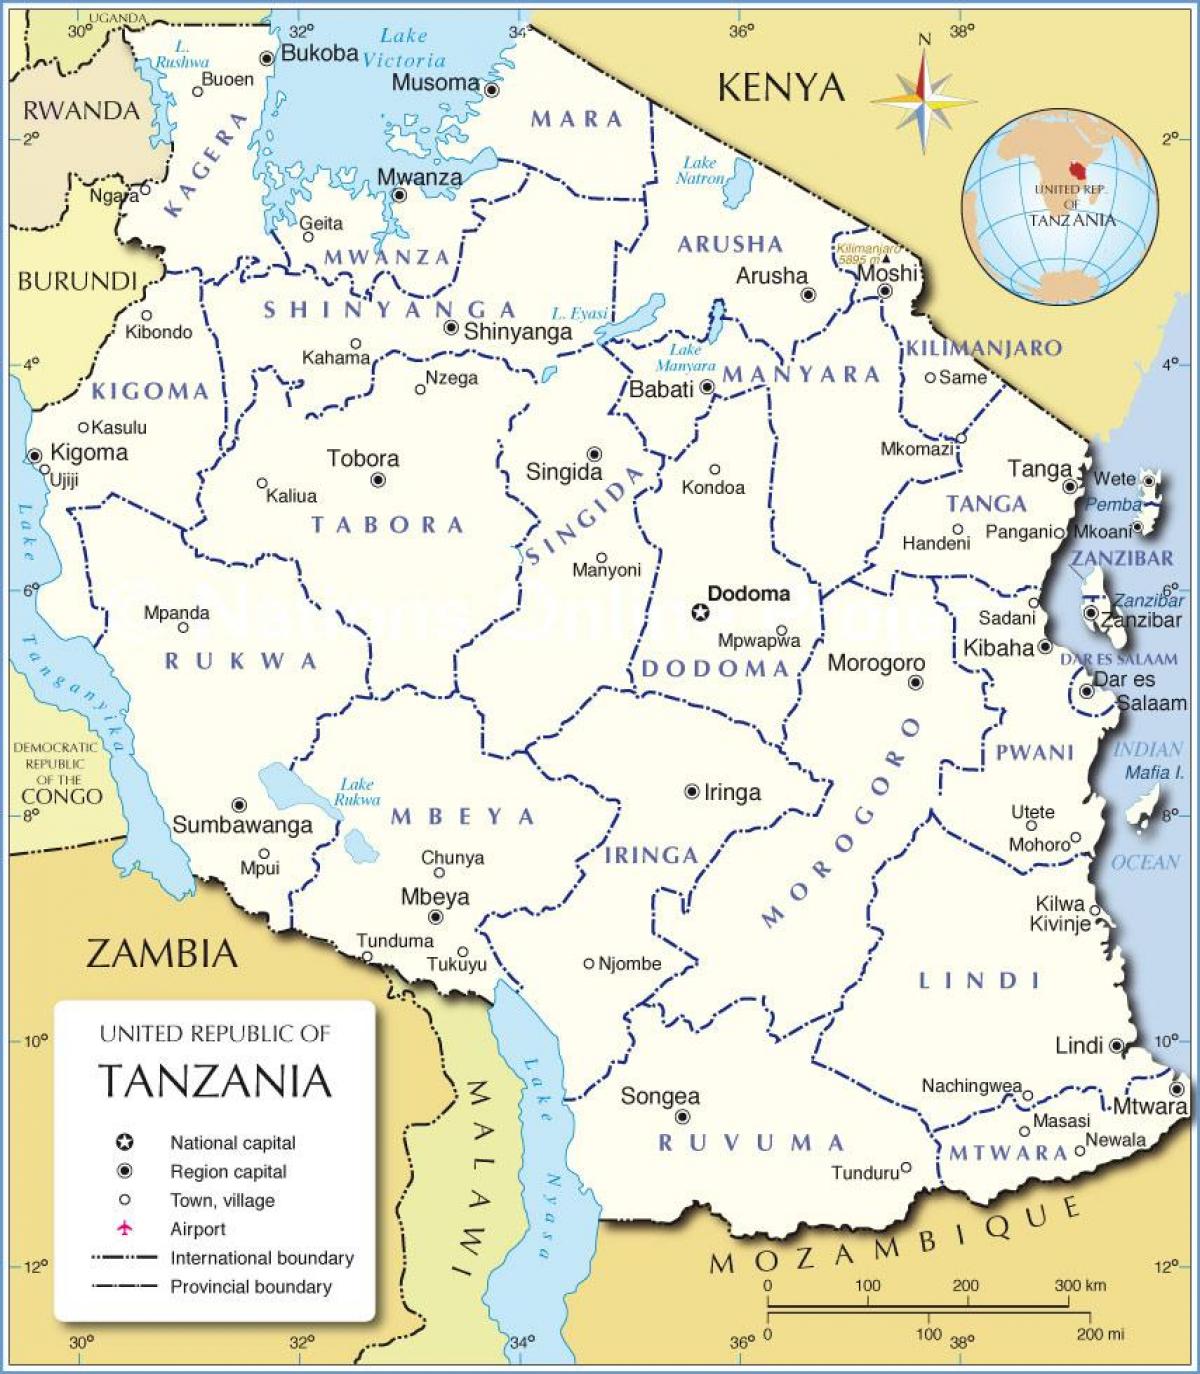 Mapa da tanzânia, com o distrito